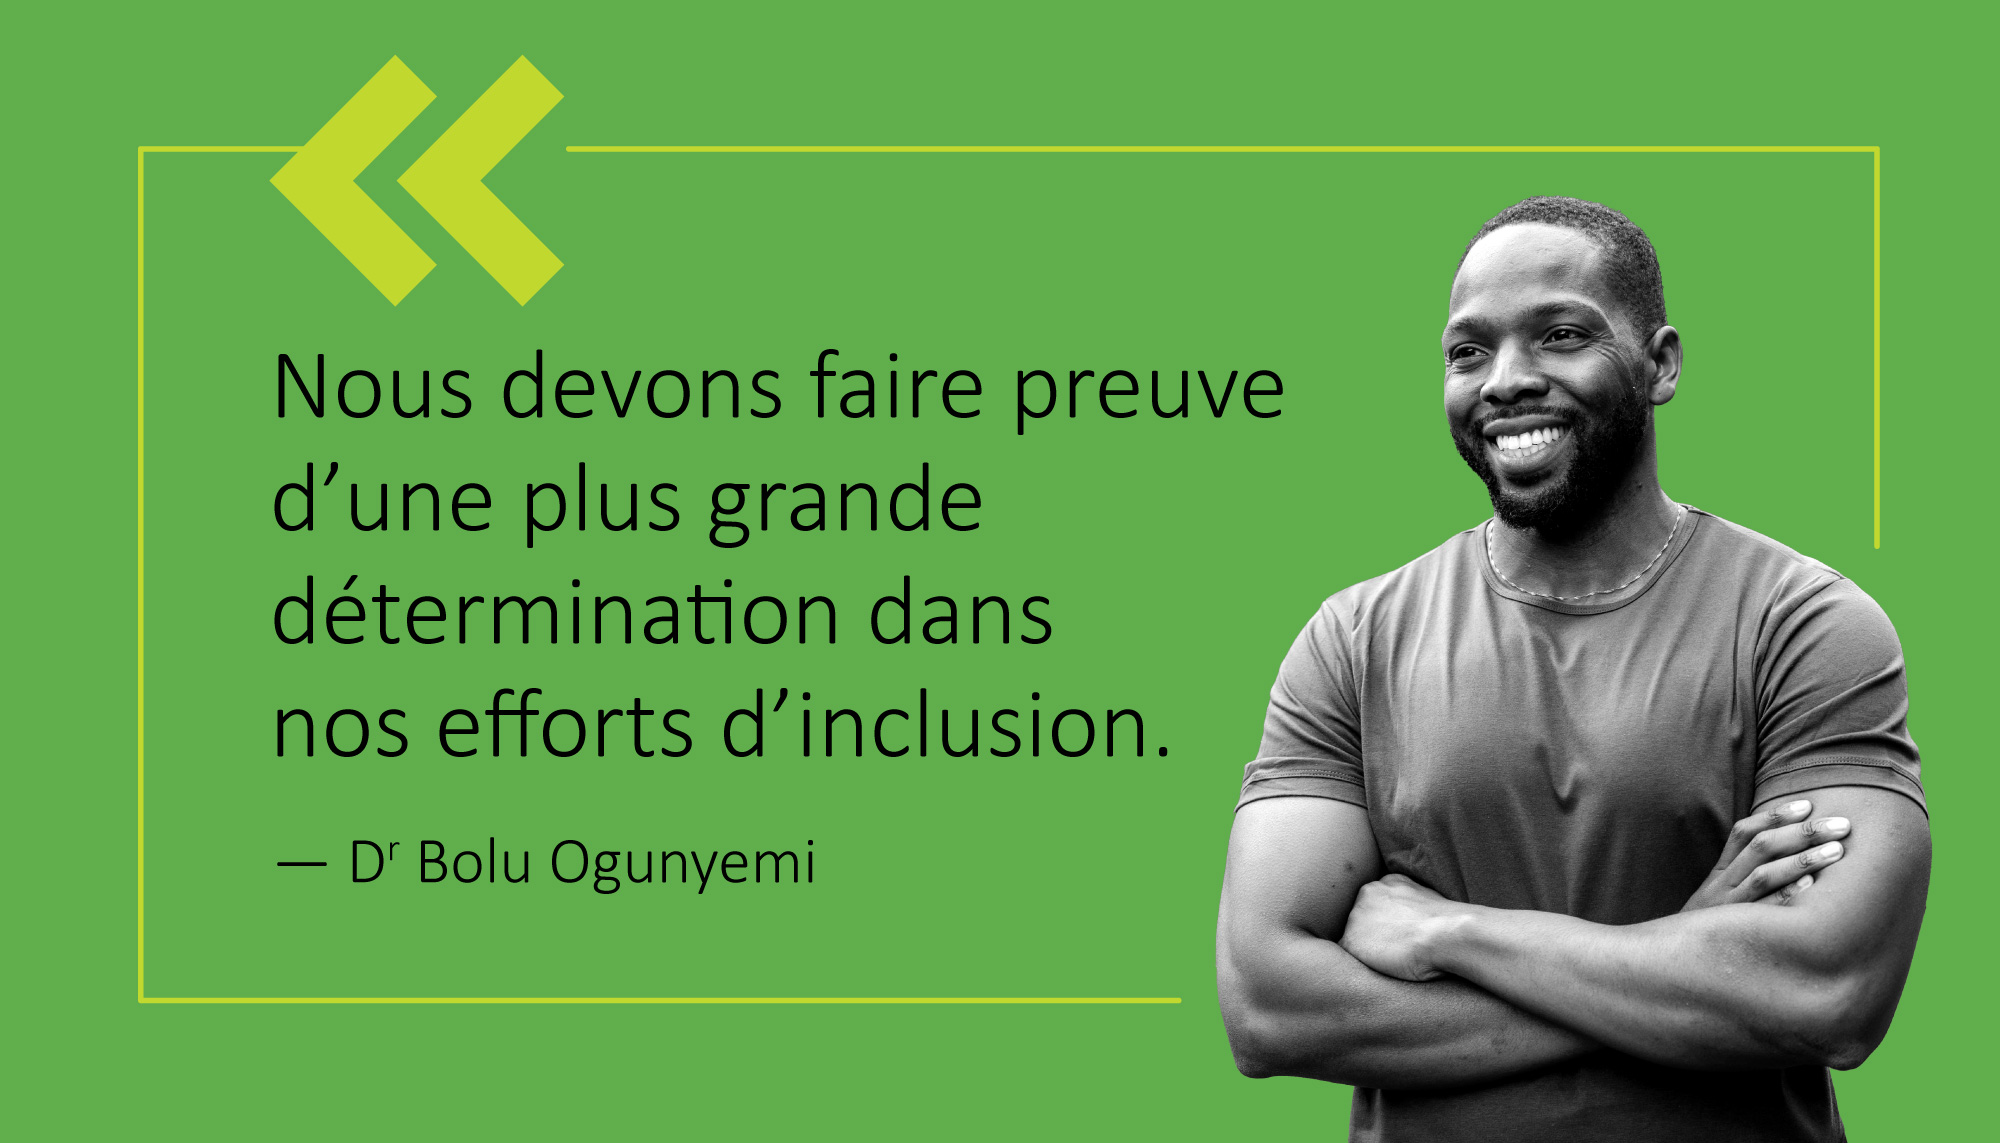 Nous devons faire preuve d'une plus grande determination dans nos efforts d'inclusion. - Dr Bolu Ogunyemi